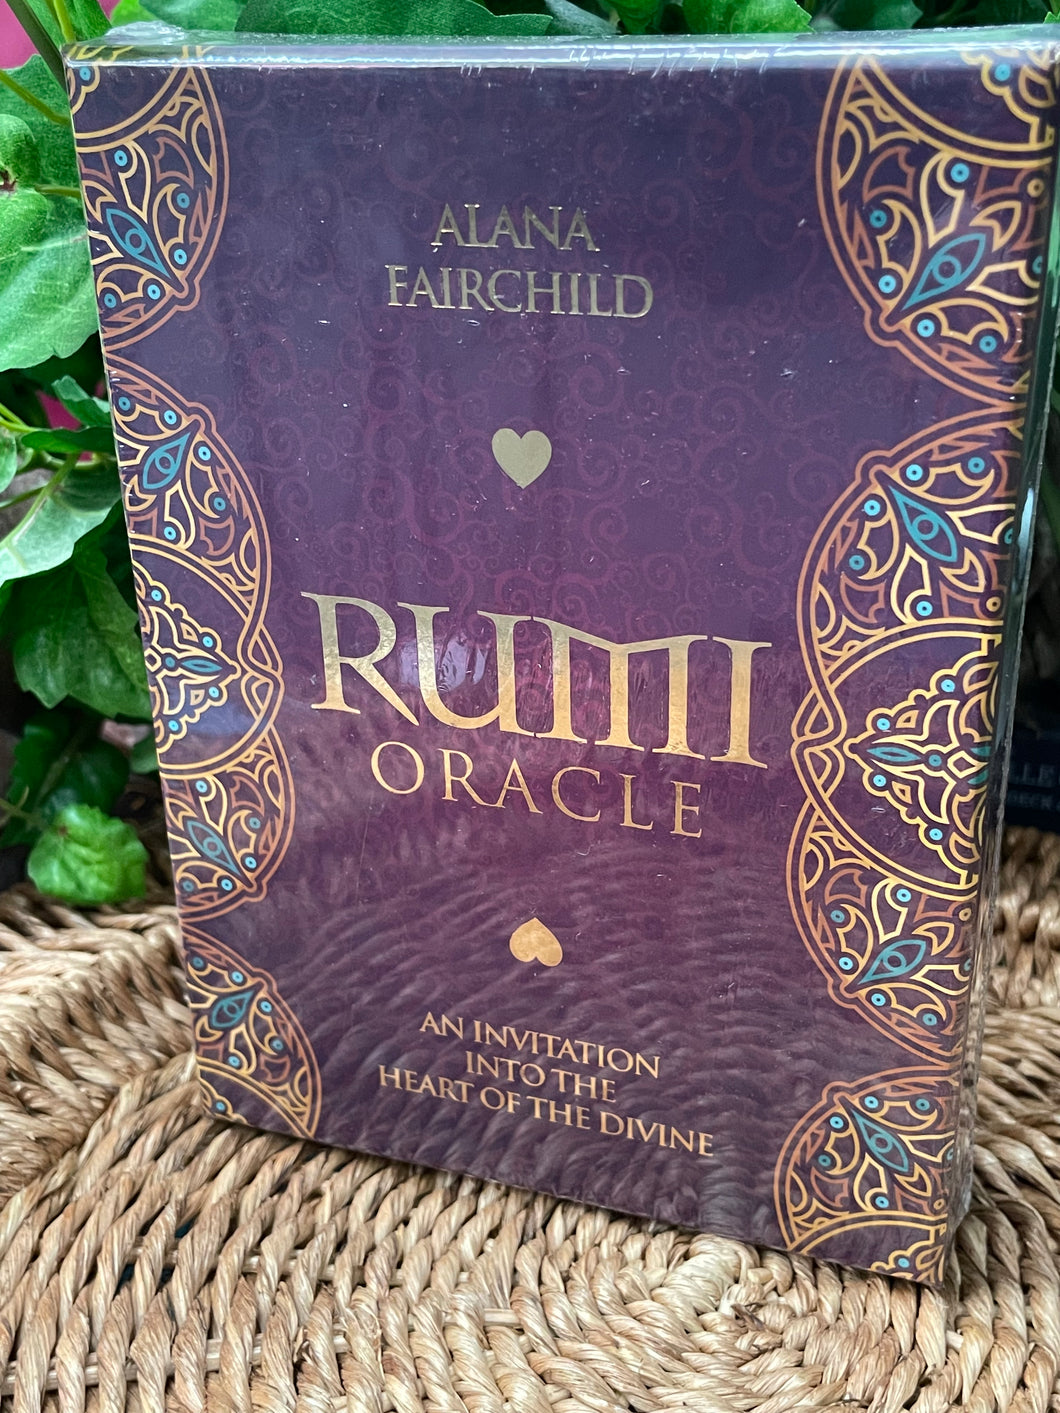 Rumi Oracle